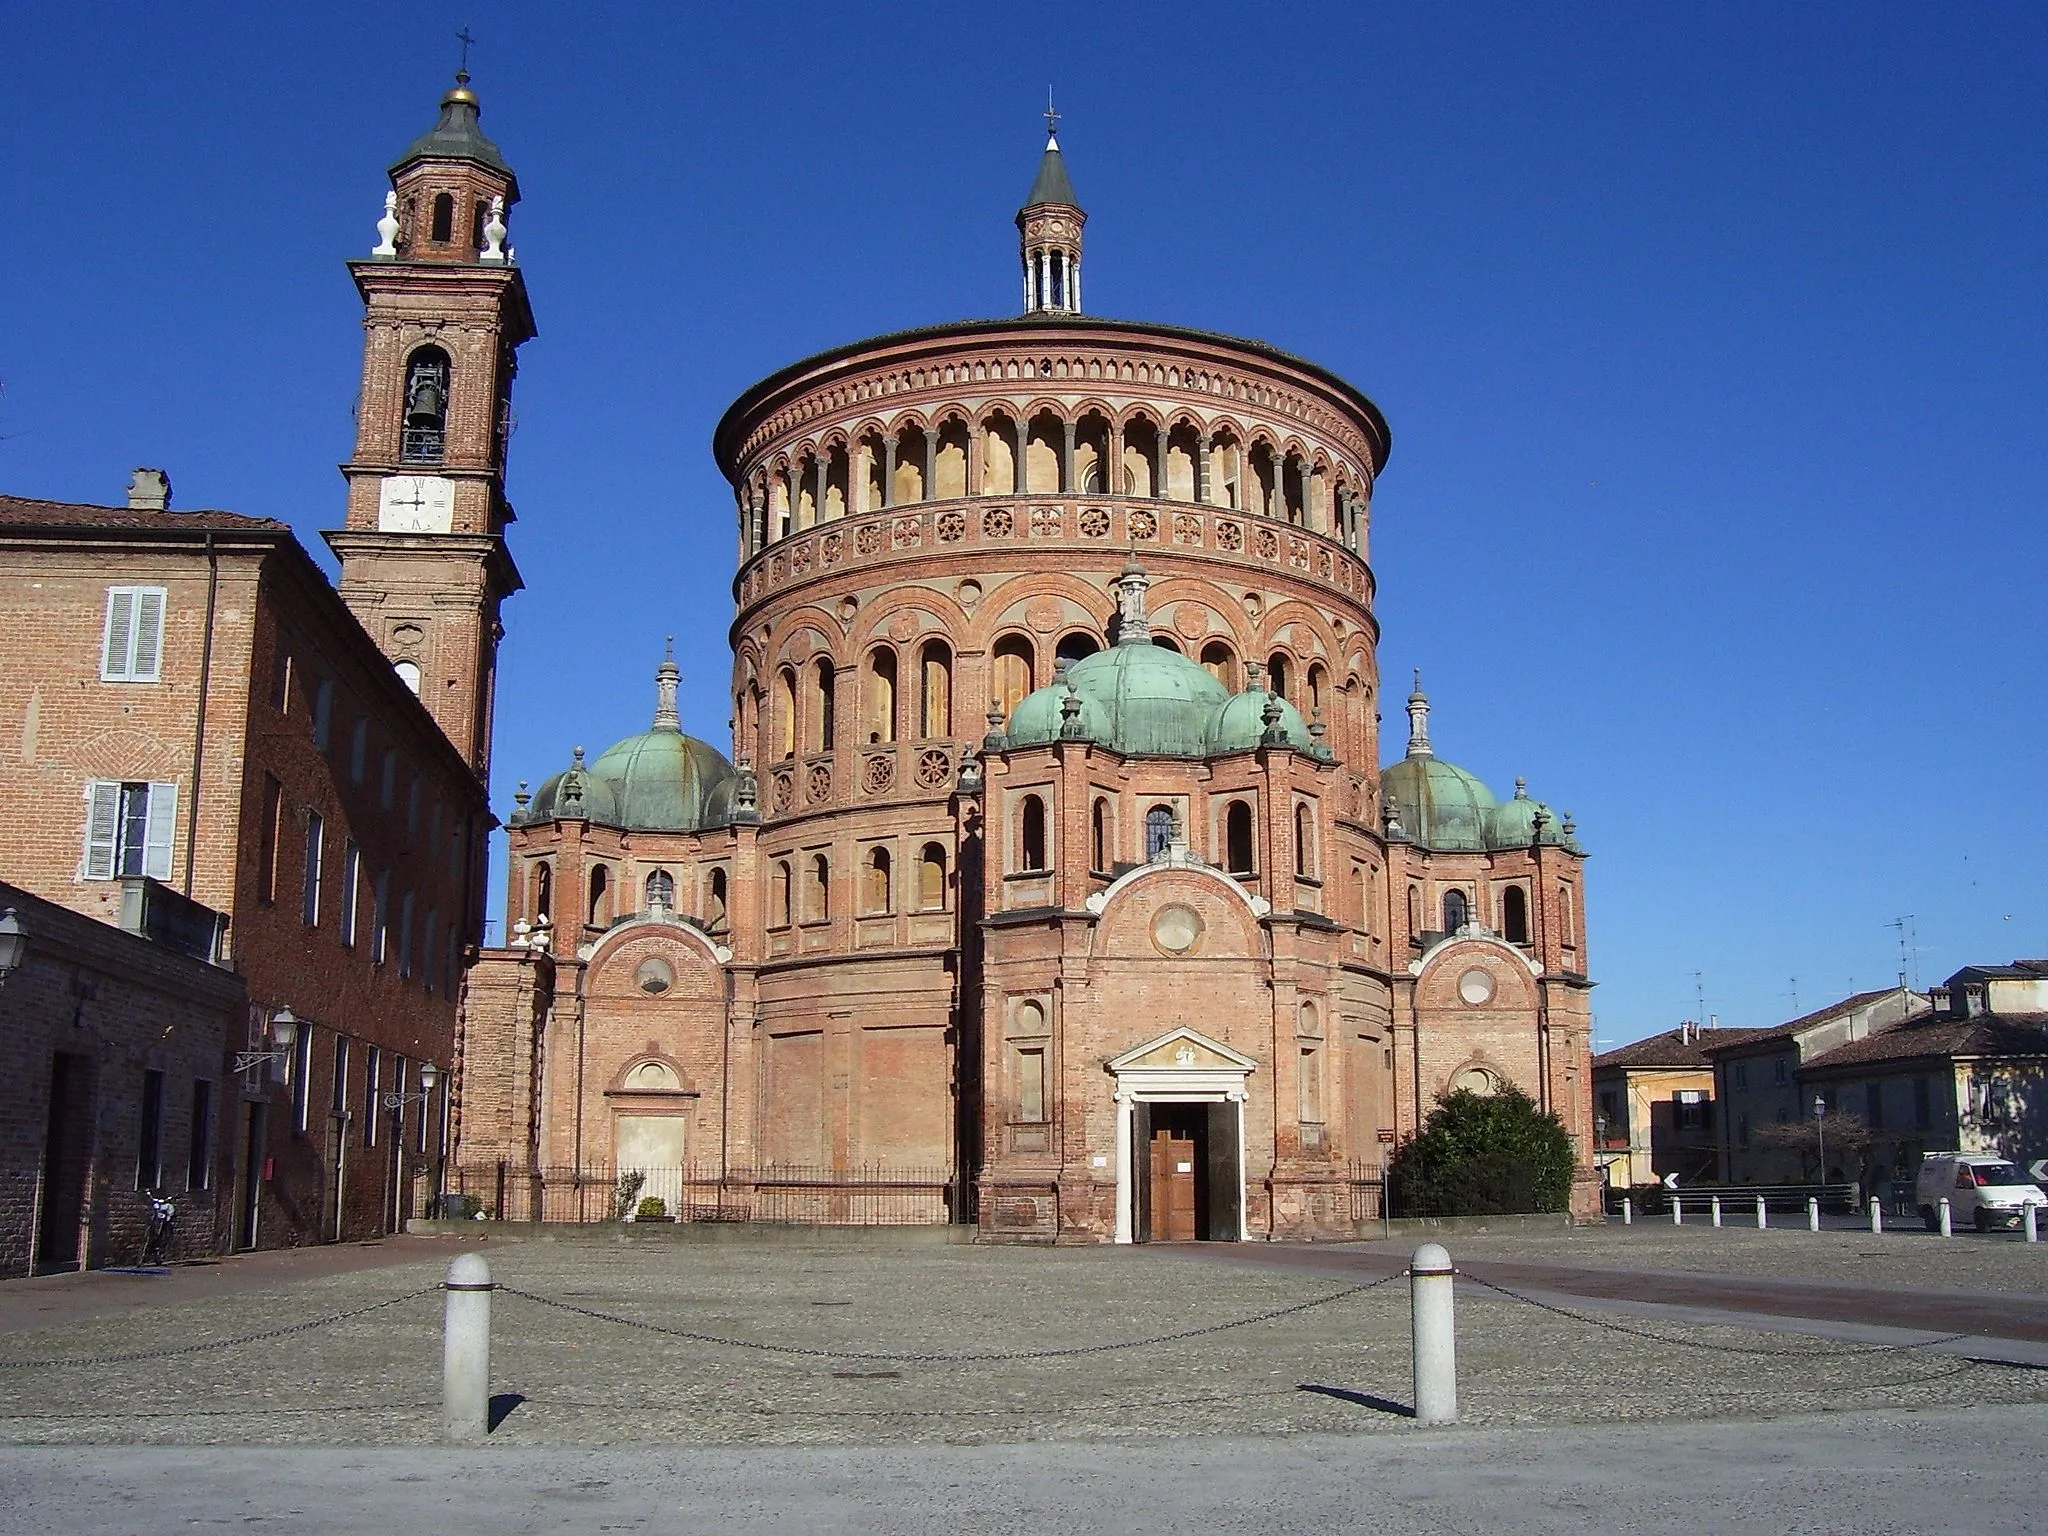 Photo showing: Basilica di Santa Maria della Croce, Crema (CR)
autore Michele Scandelli
KodakEasyShareC340 @5Mpx

taken on 2Gen2007